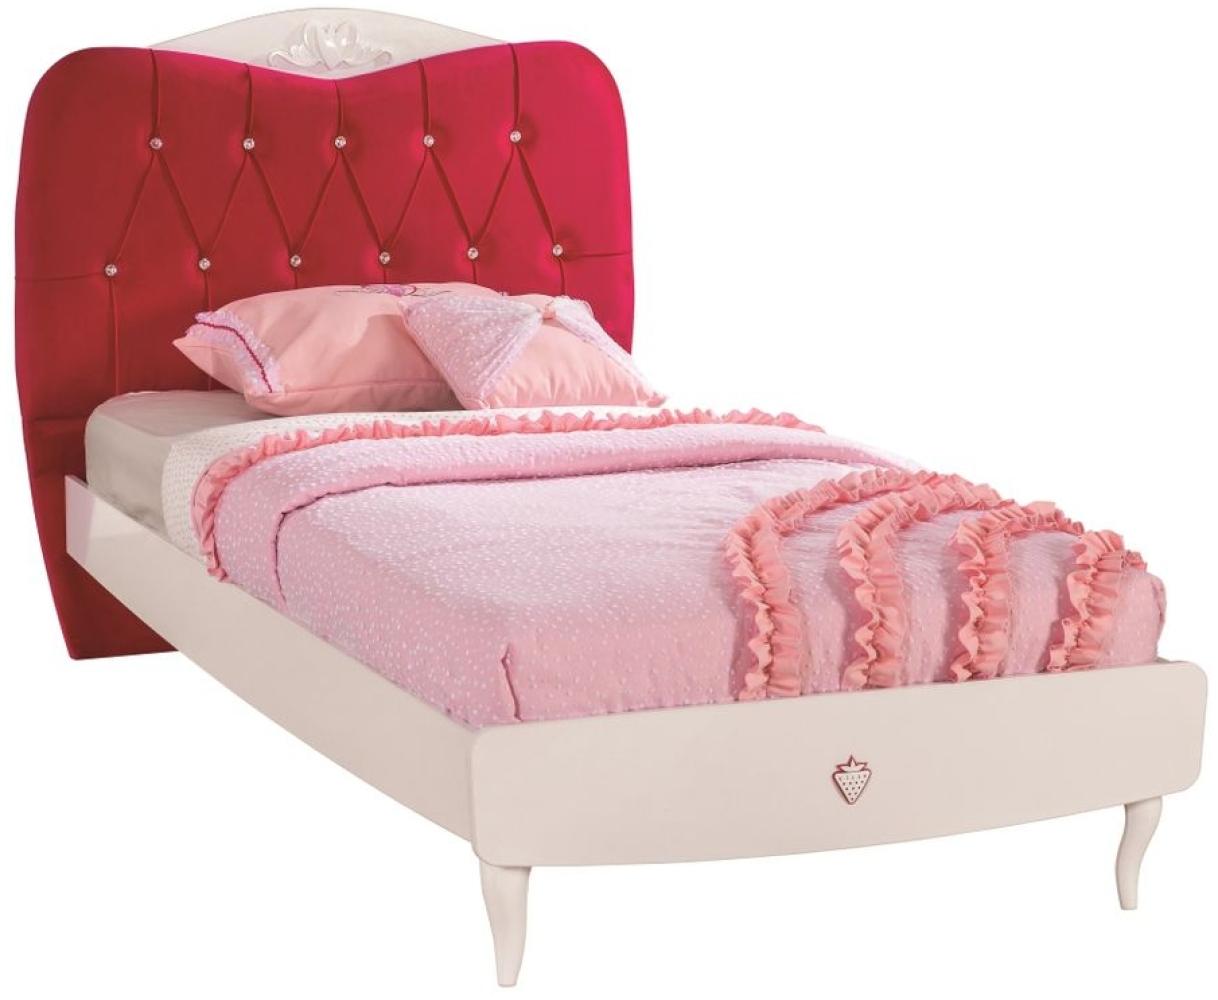 Cilek YAKUT Bett Jugendbett Jugendzimmer 100x200cm Weiß/Pink mit Bild 1